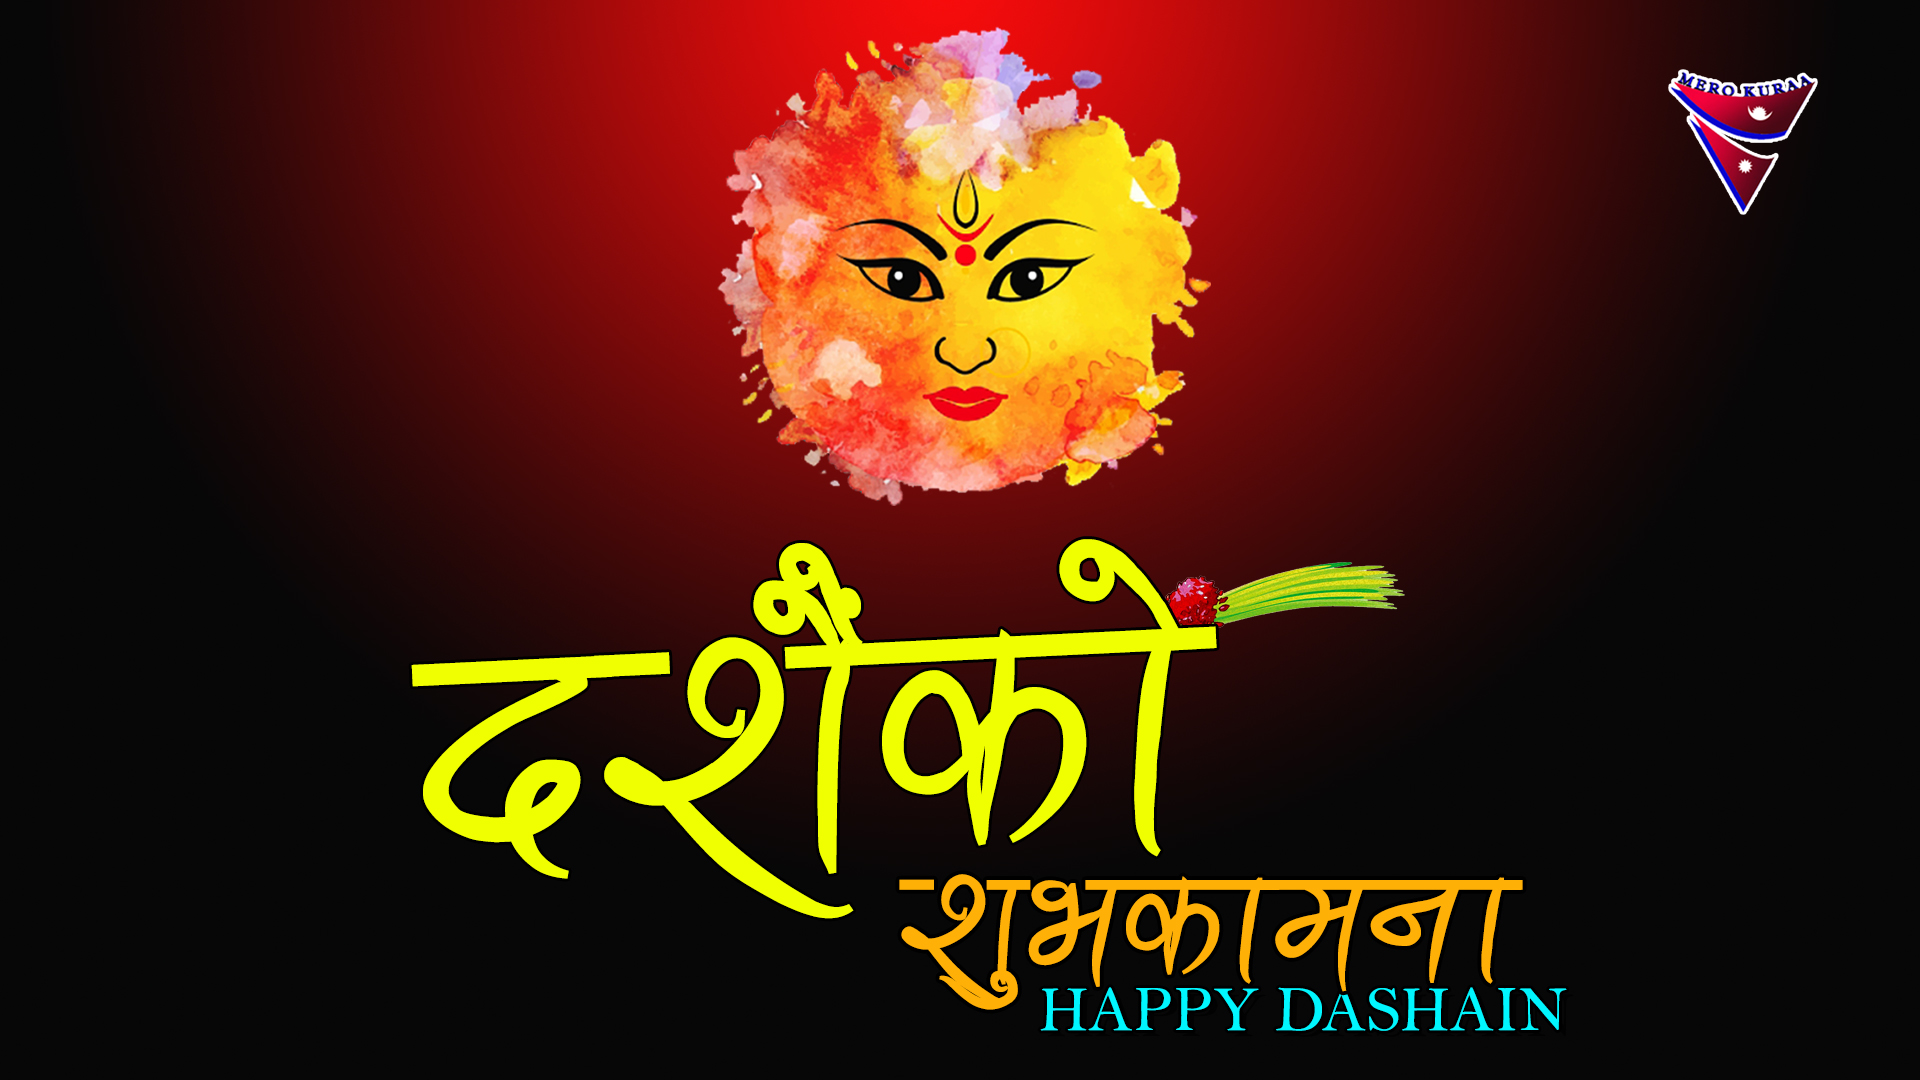 Happy Dashain Images Dashain Wishes Mero Kuraa Nepal's English